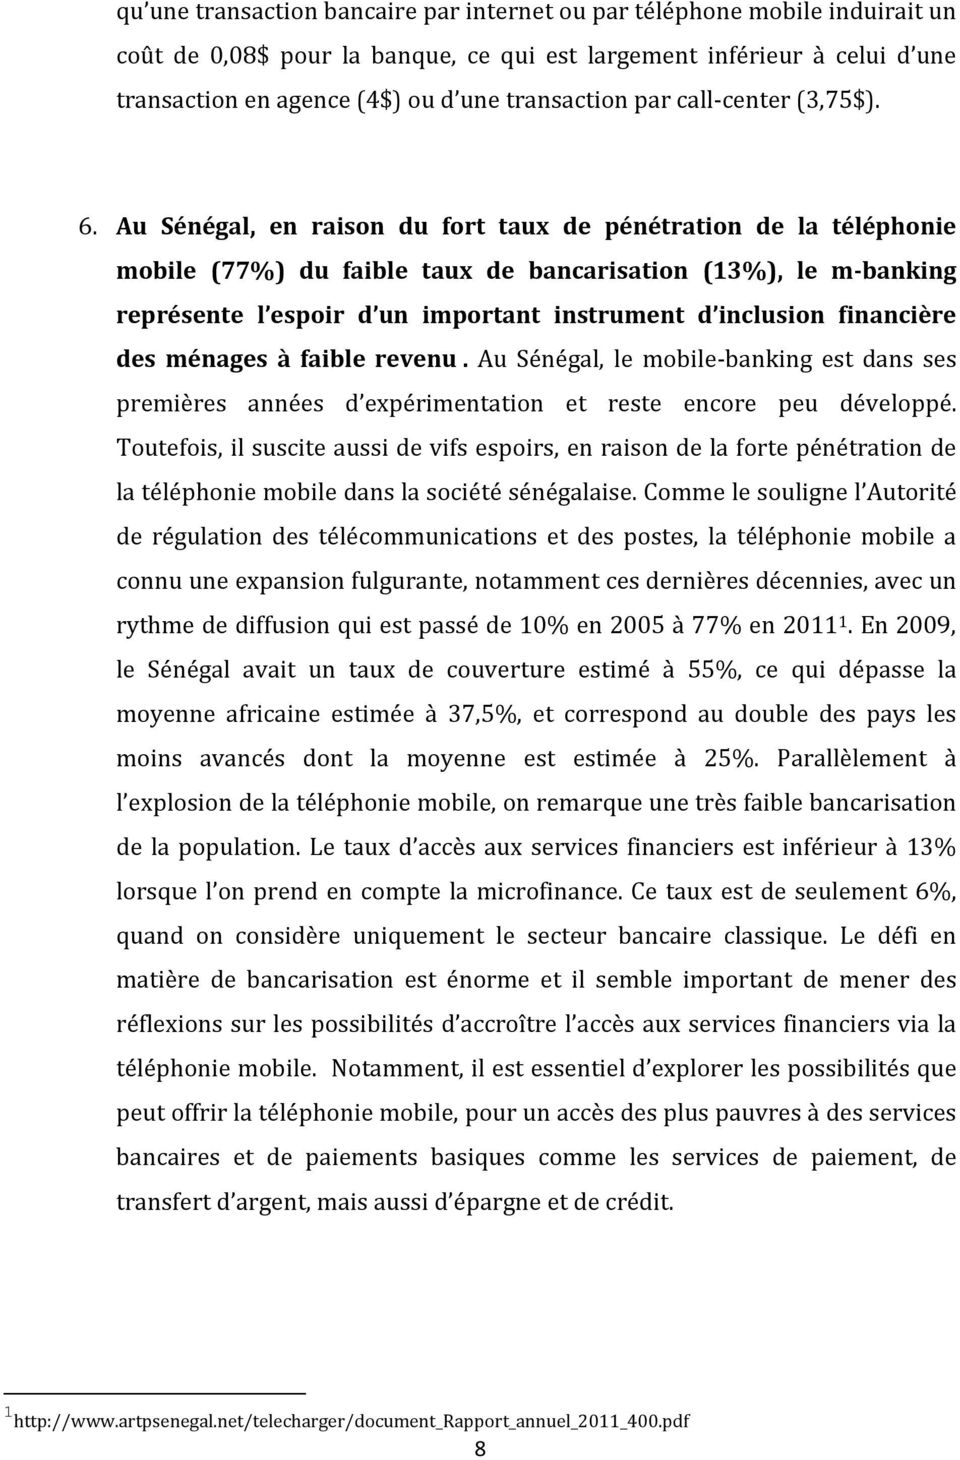 Au Sénégal, en raison du fort taux de pénétration de la téléphonie mobile (77%) du faible taux de bancarisation (13%), le m-banking représente l espoir d un important instrument d inclusion